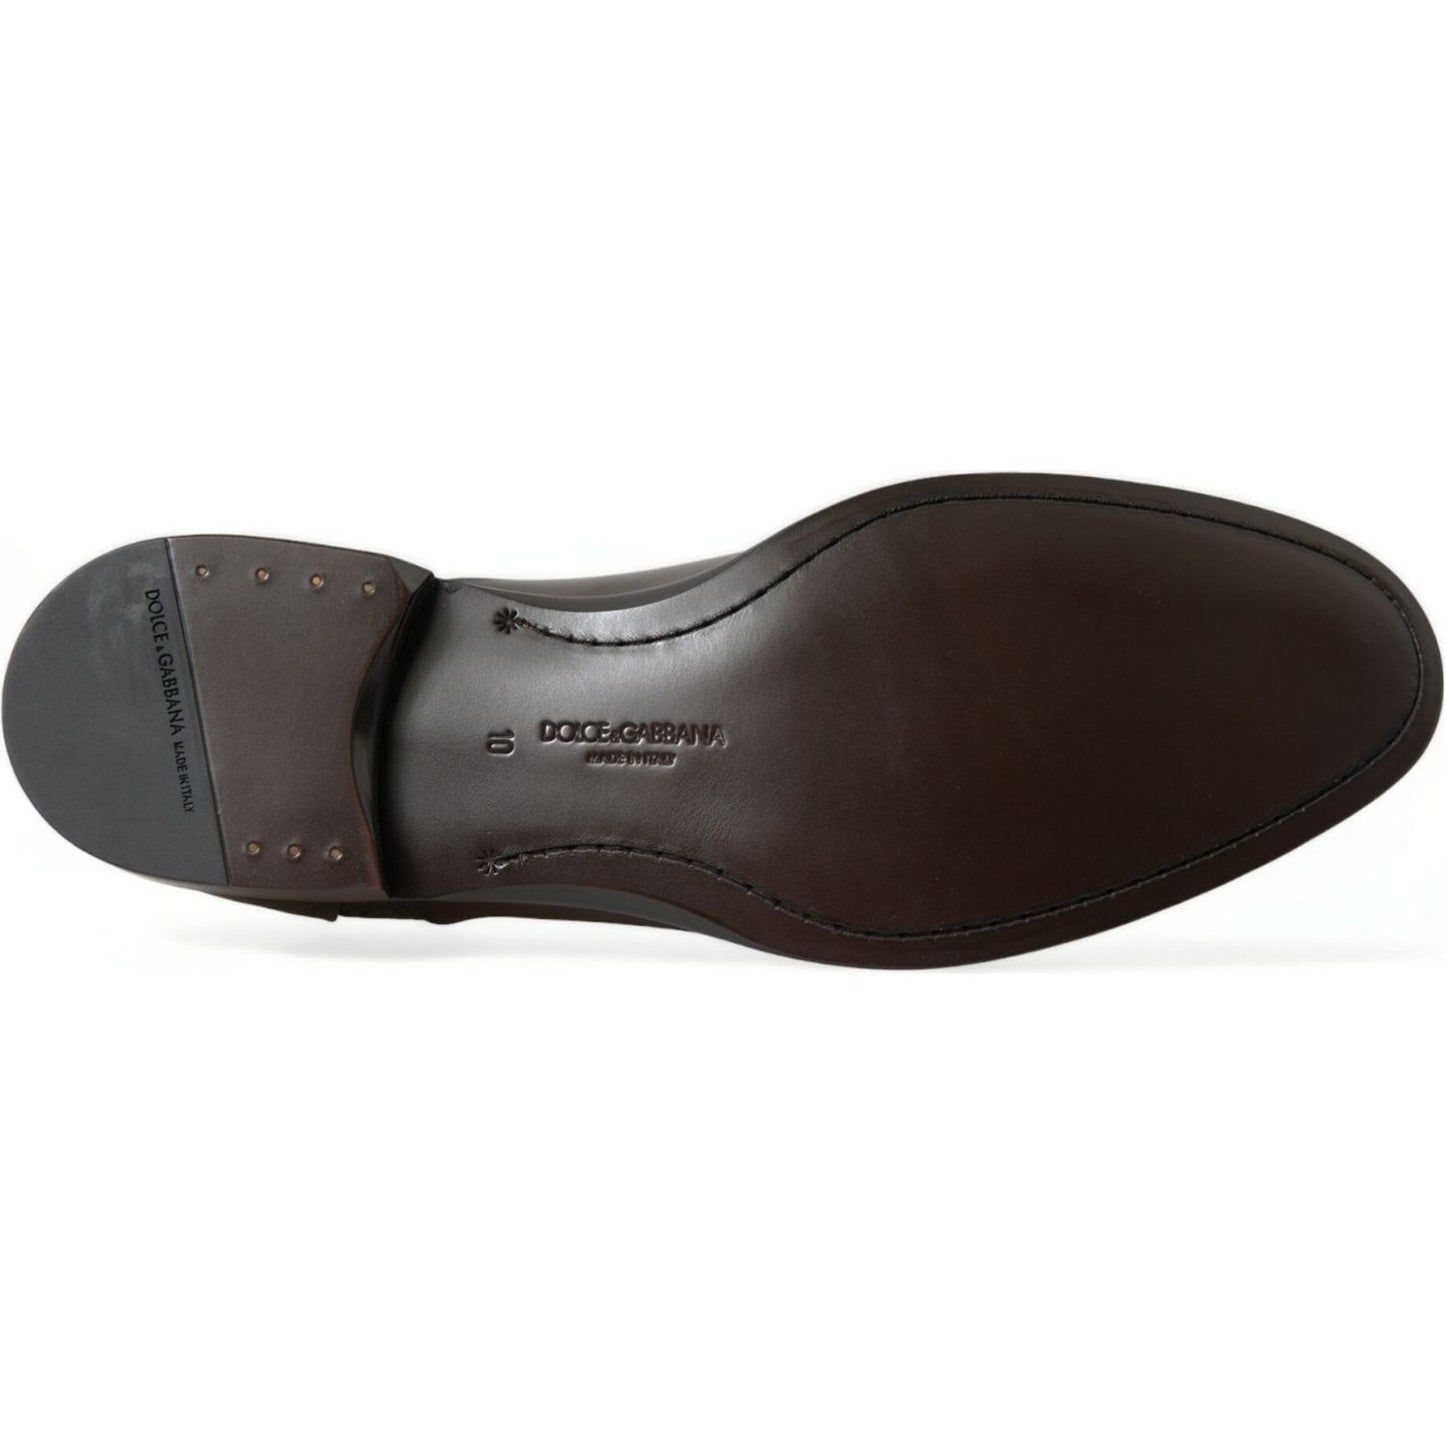 Dolce & Gabbana Elegant Brown Formal Derby Dress Shoes brown-exotic-leather-formal-men-dress-shoes